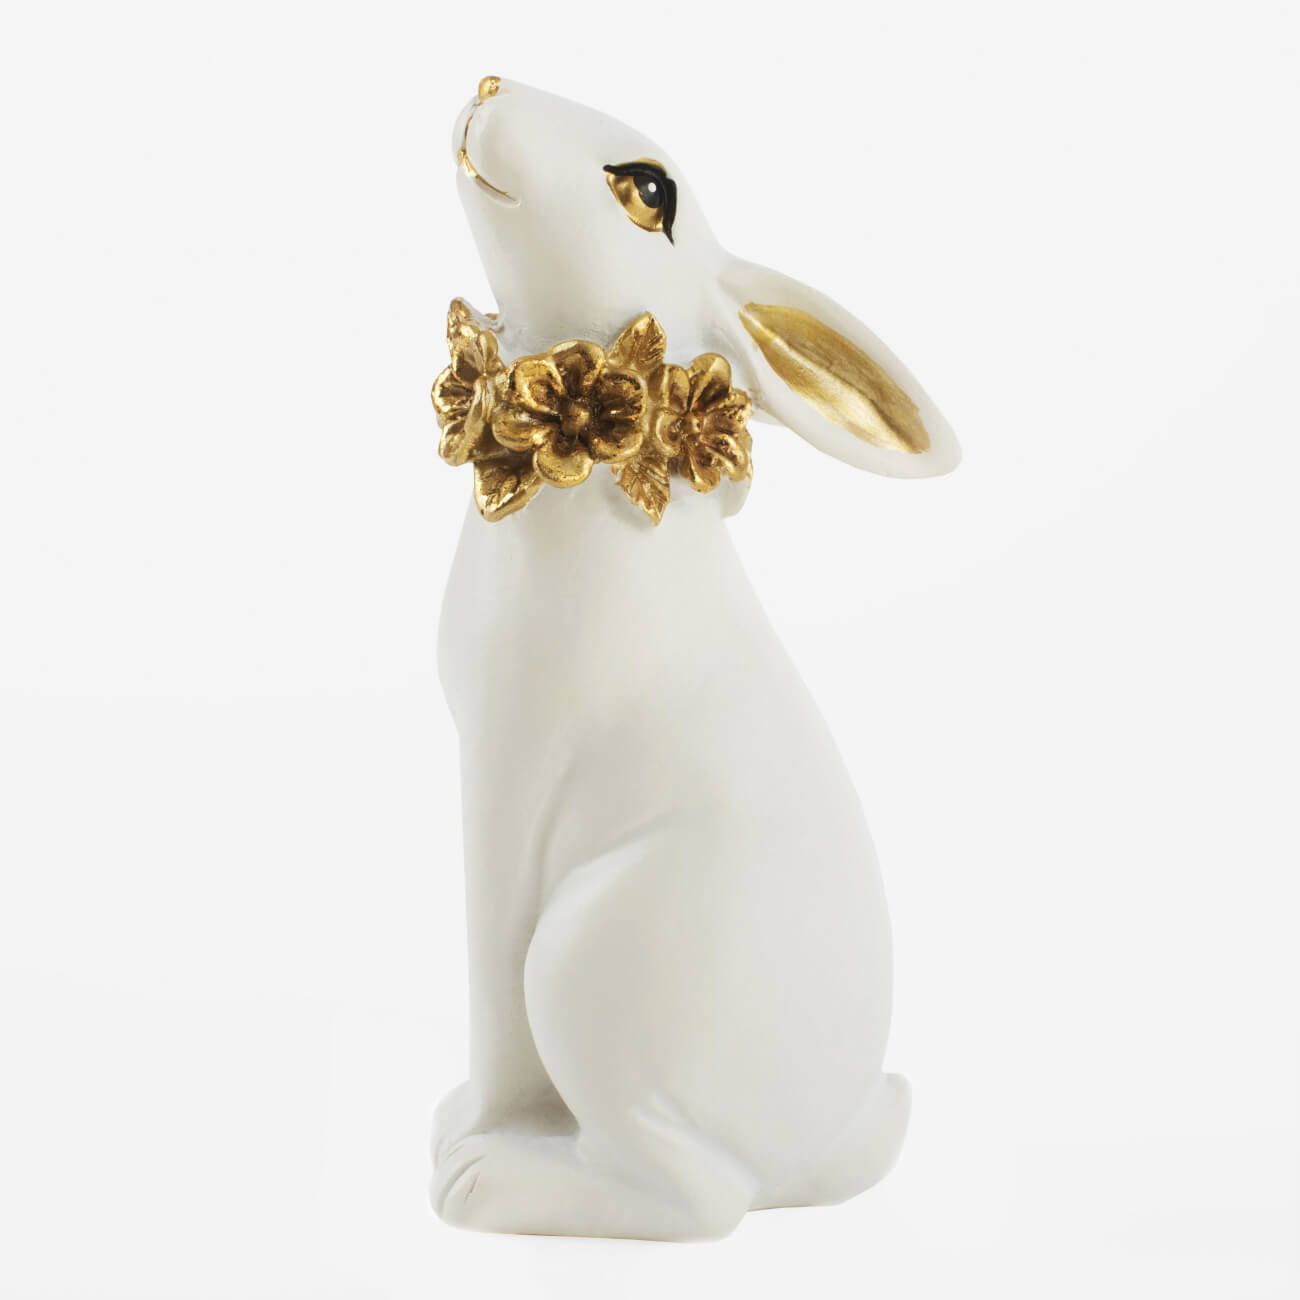 Статуэтка, 13 см, полирезин, бело-золотистая, Кролик с цветочным ожерельем, Easter gold статуэтка 13 см керамика золотистая кролик easter gold